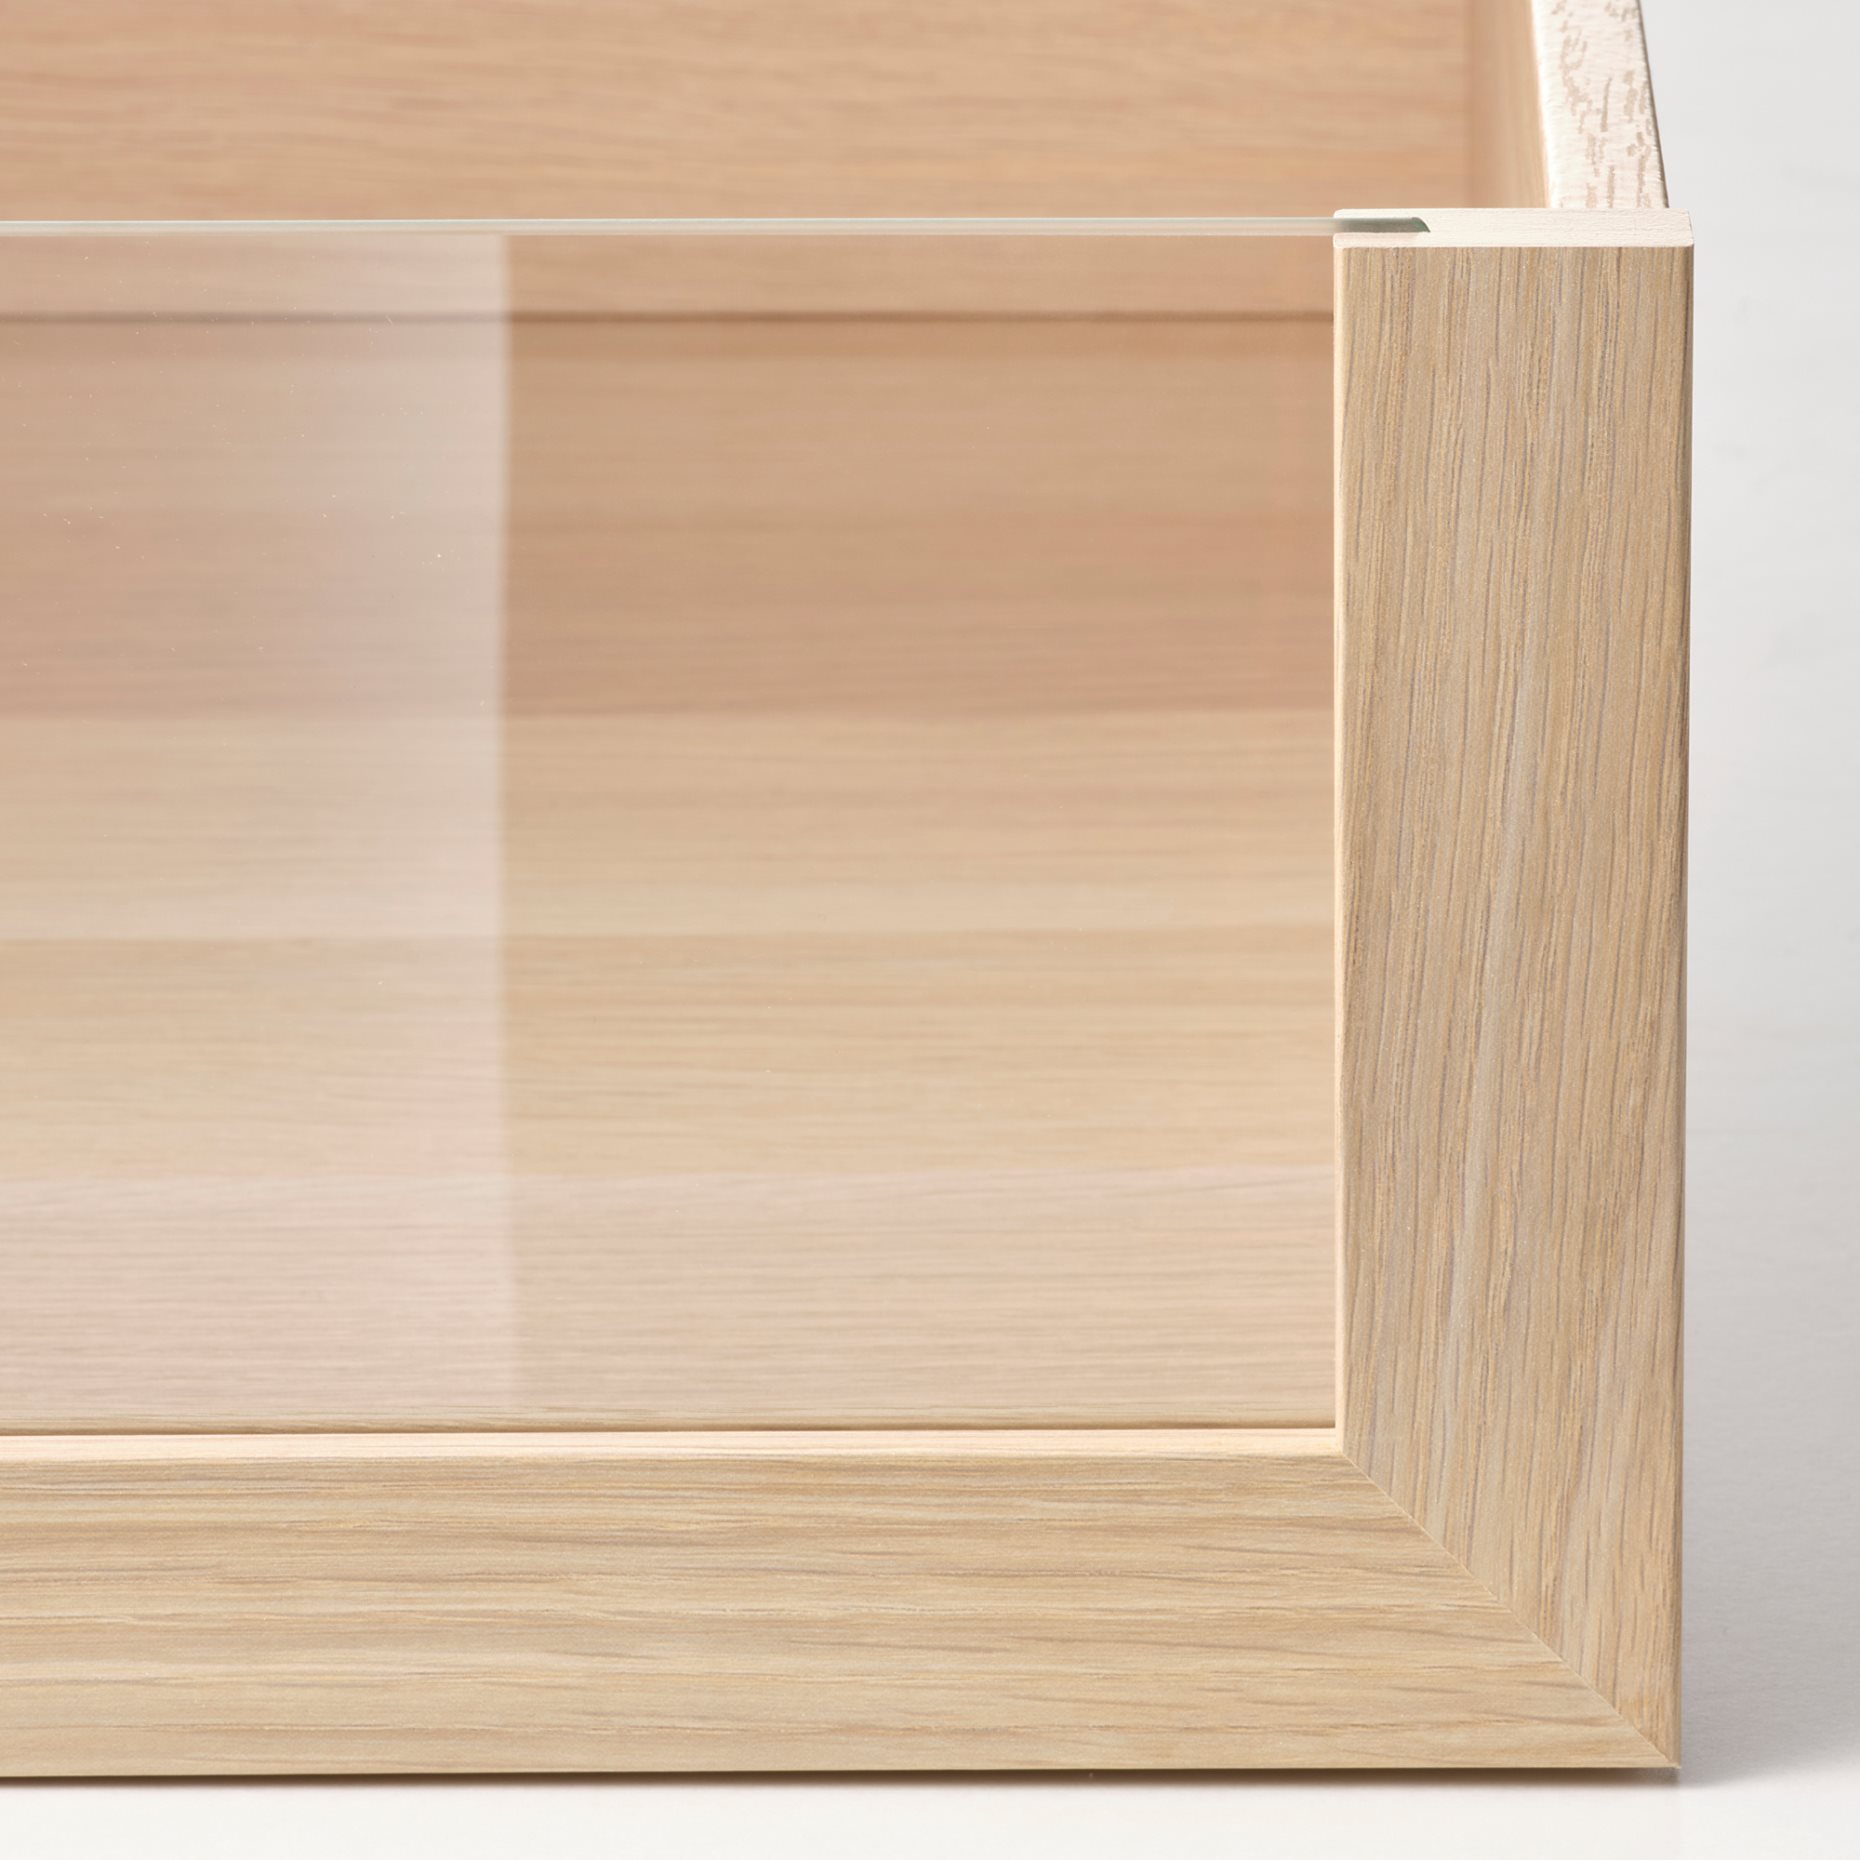 KOMPLEMENT, чекмедже със стъклено чело, 100x58 см, цвят избелен дъб, 002.467.14